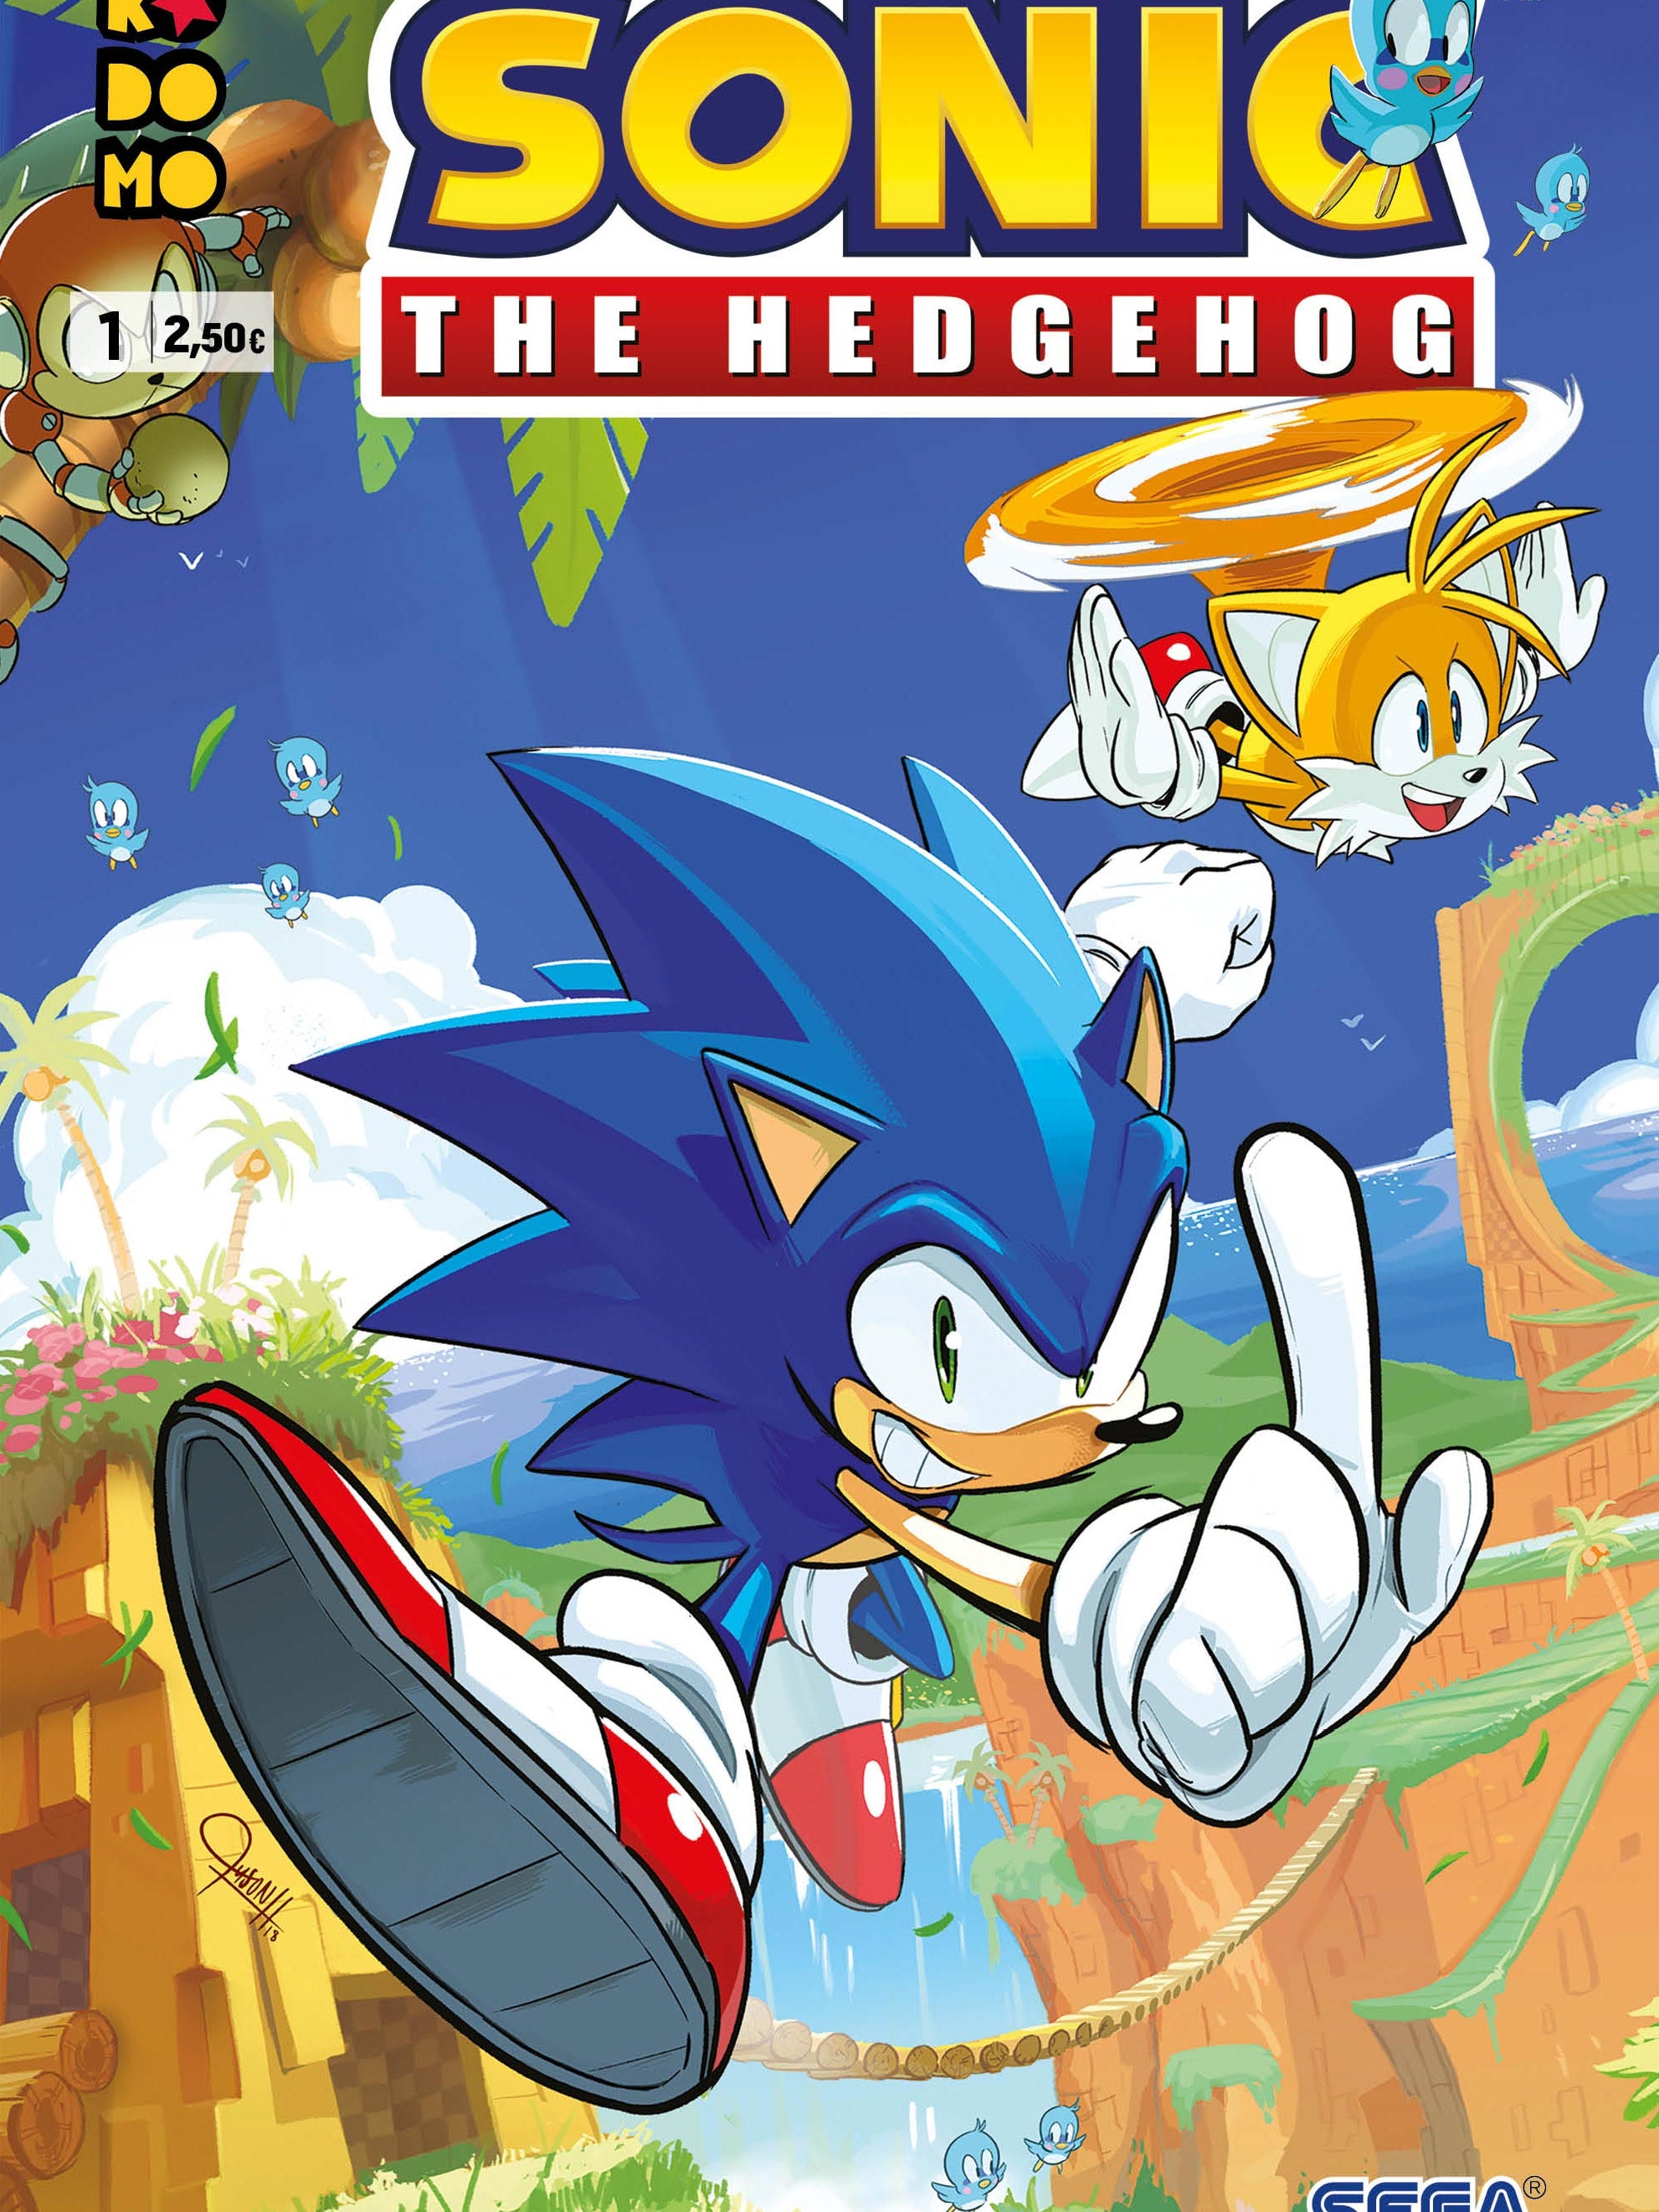 Sonic The Hedgehog núm. 01 (Tercera edición) Ecc ENcuadrocomics